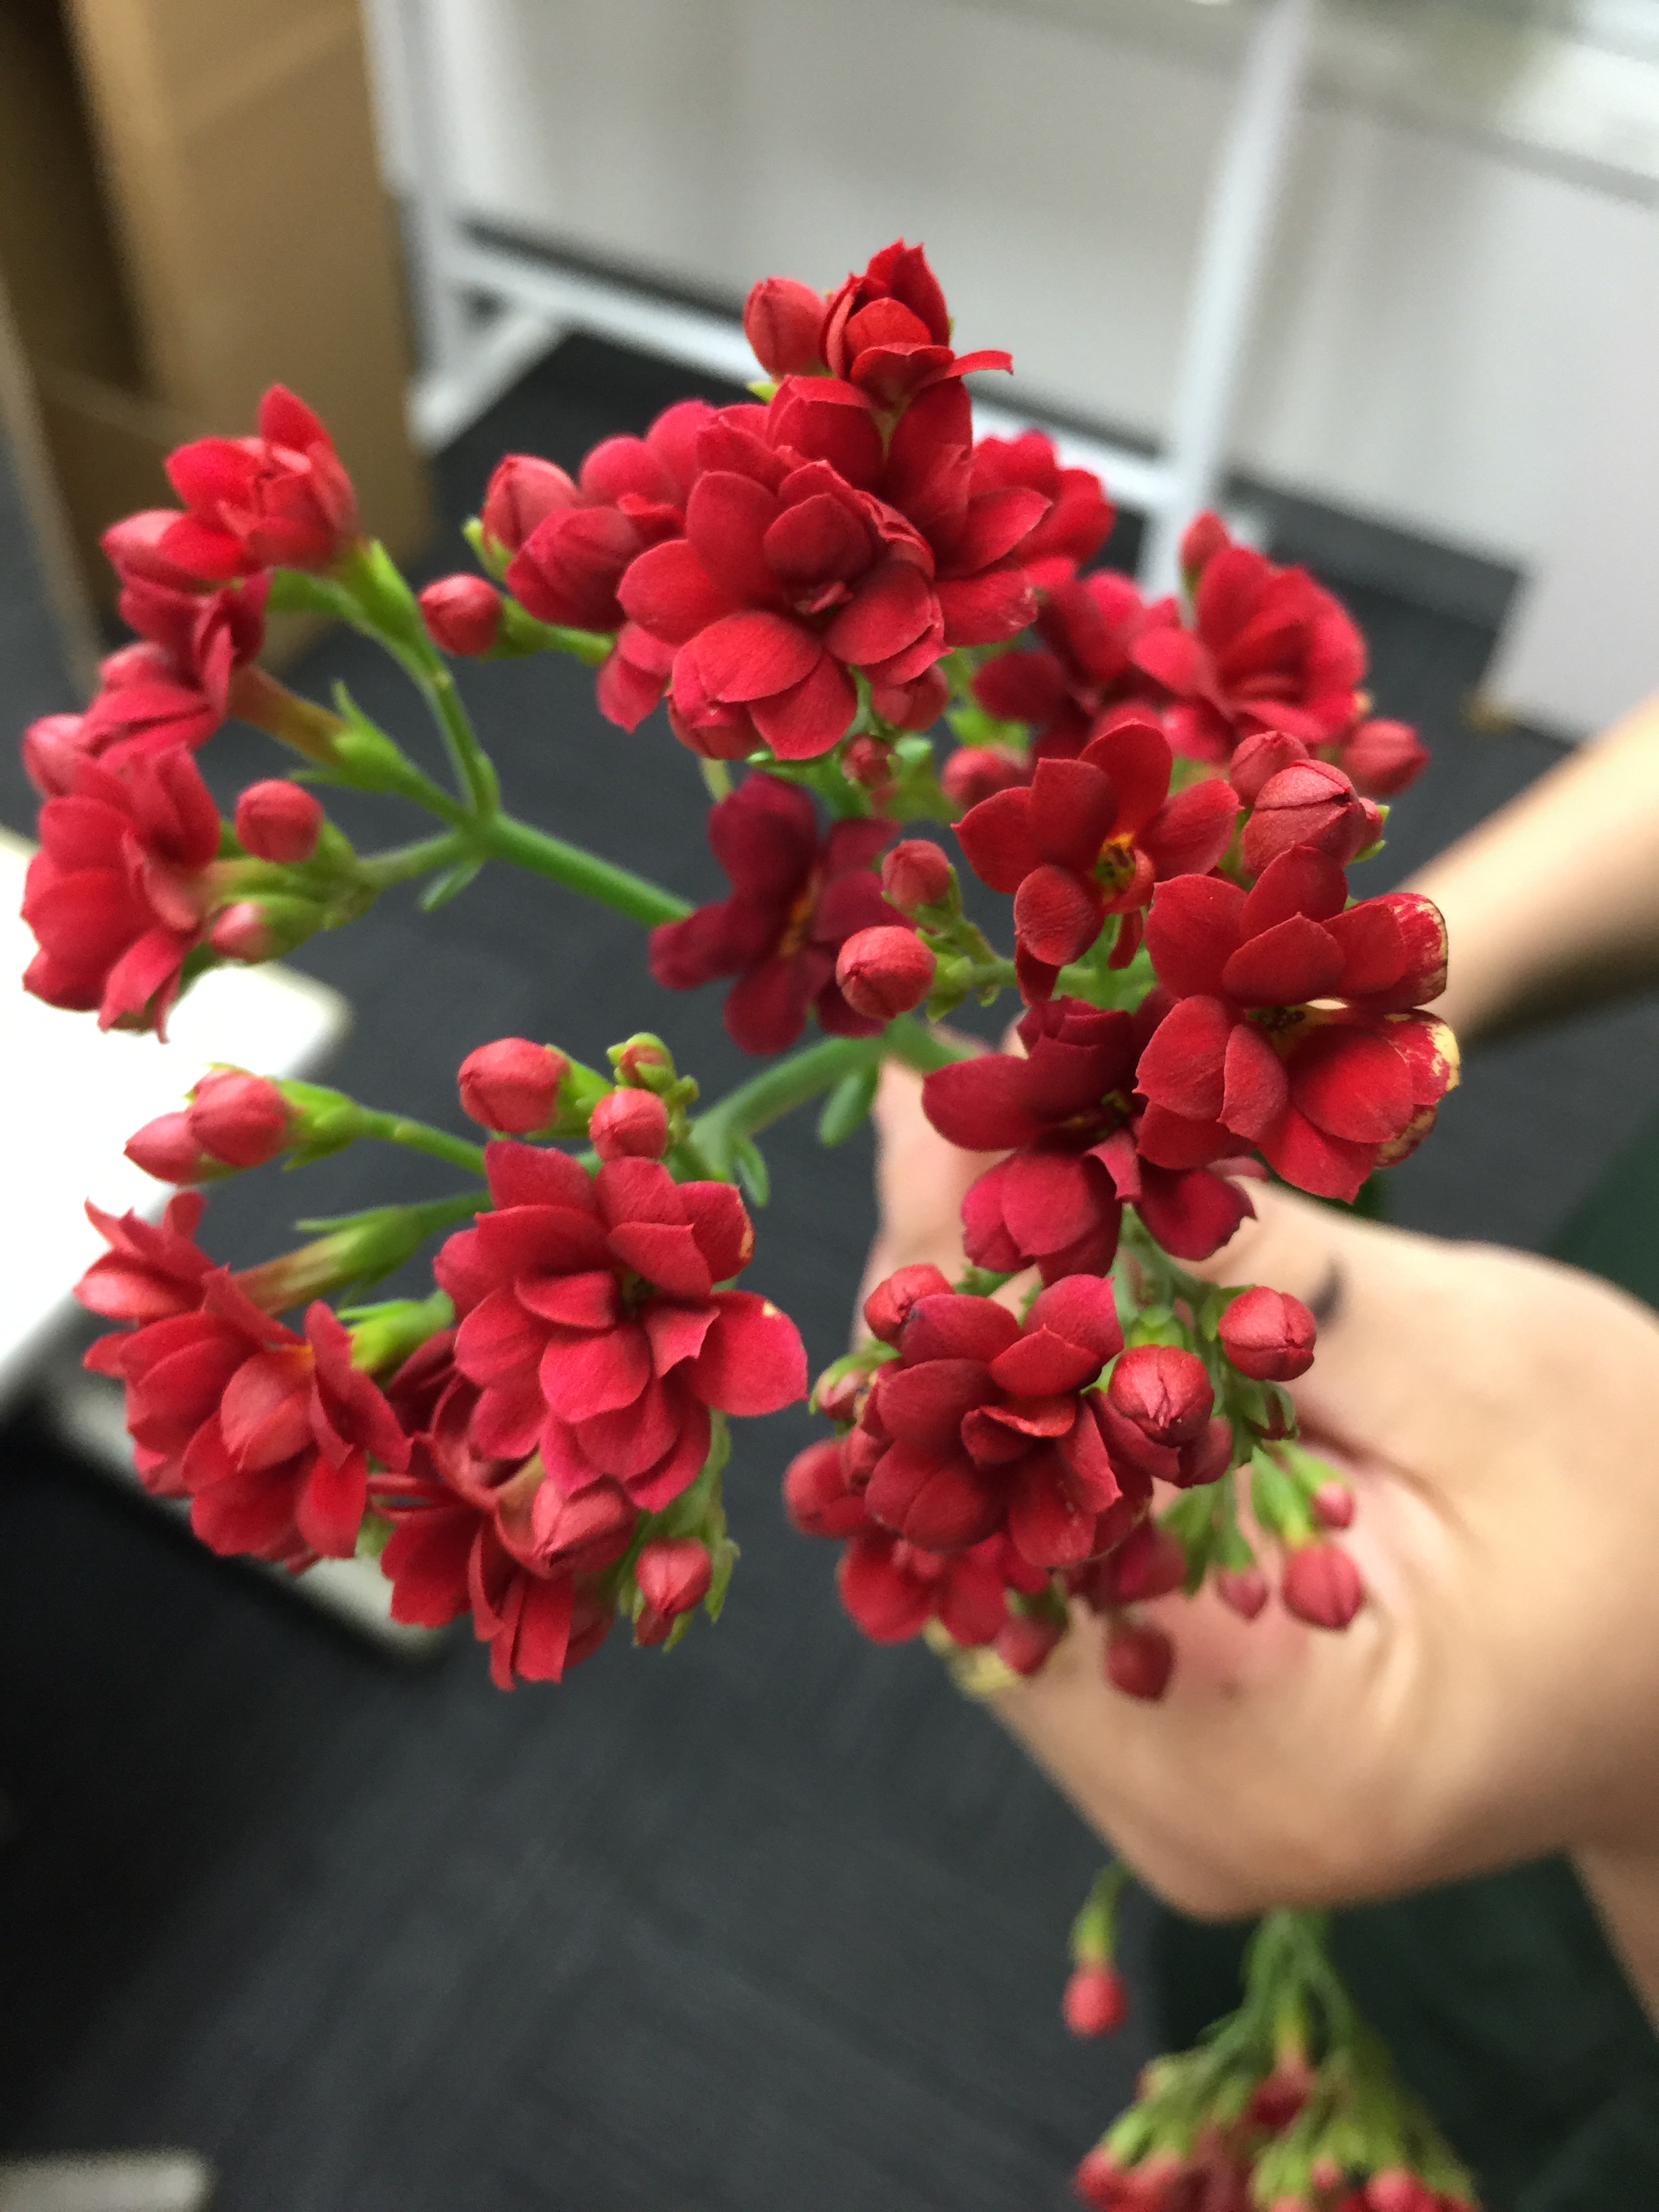 細谷さんのカランコエ 花市場の仲卸 大森花卉 おおもりかき